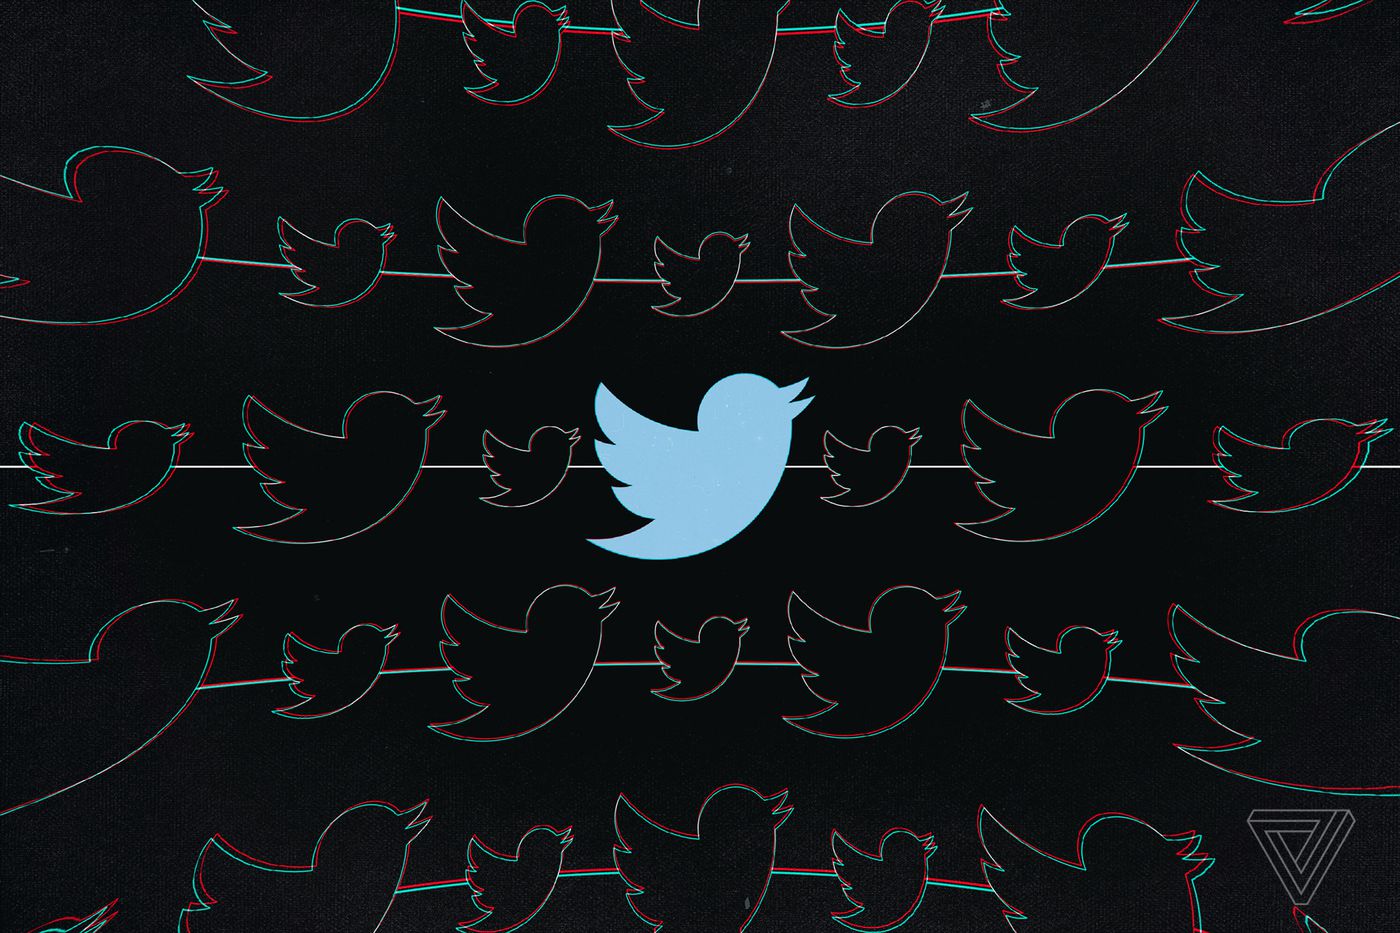 Twitter planerar spännande förändringar. De tar viktiga steg.